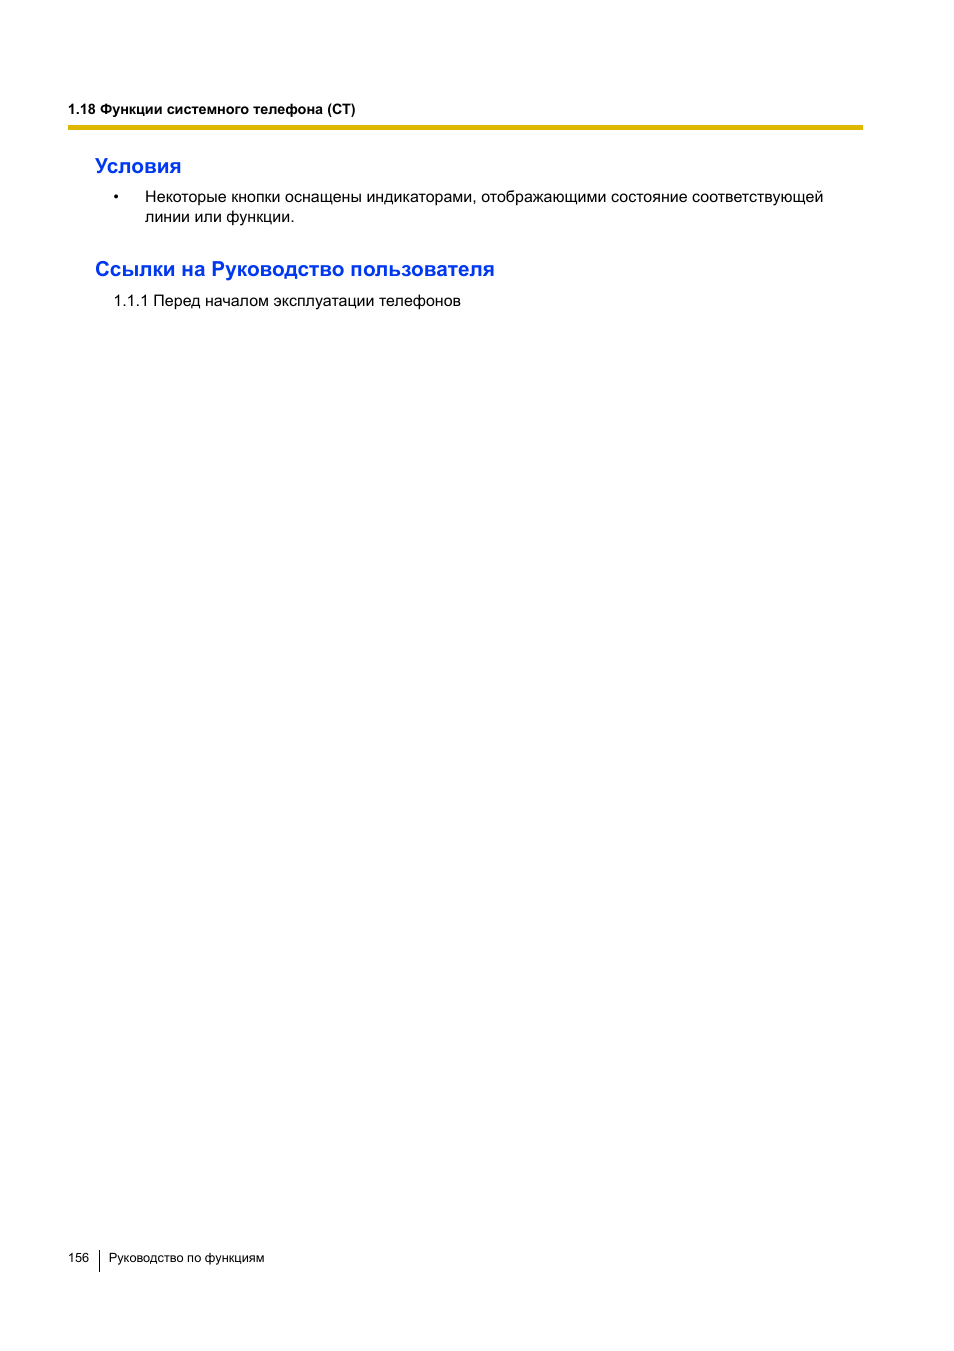 Условия, Ссылки на руководство пользователя | Инструкция по эксплуатации Panasonic KX-TEA308RU | Страница 156 / 318